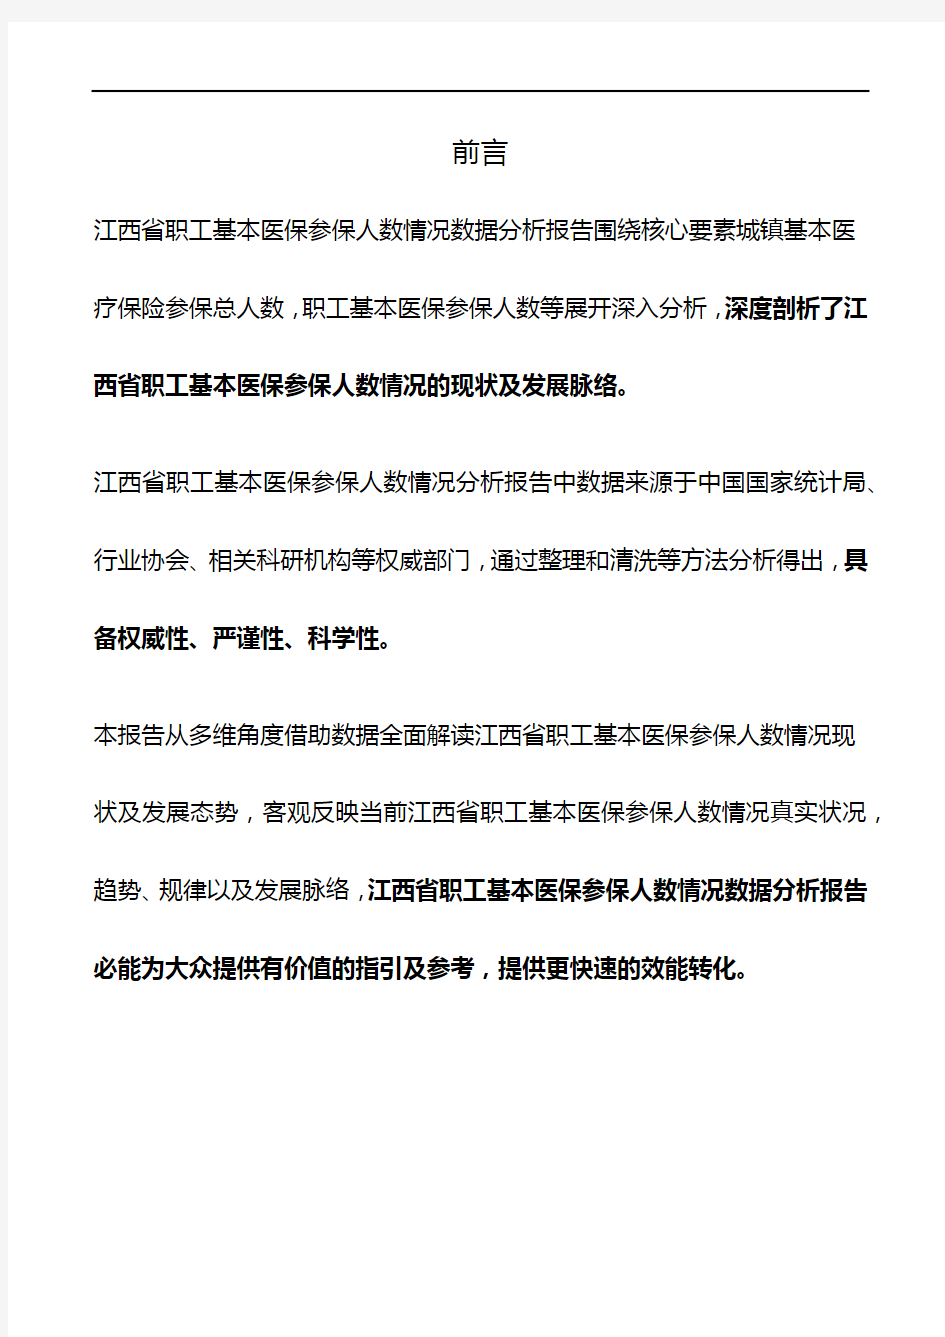 江西省职工基本医保参保人数情况3年数据分析报告2019版